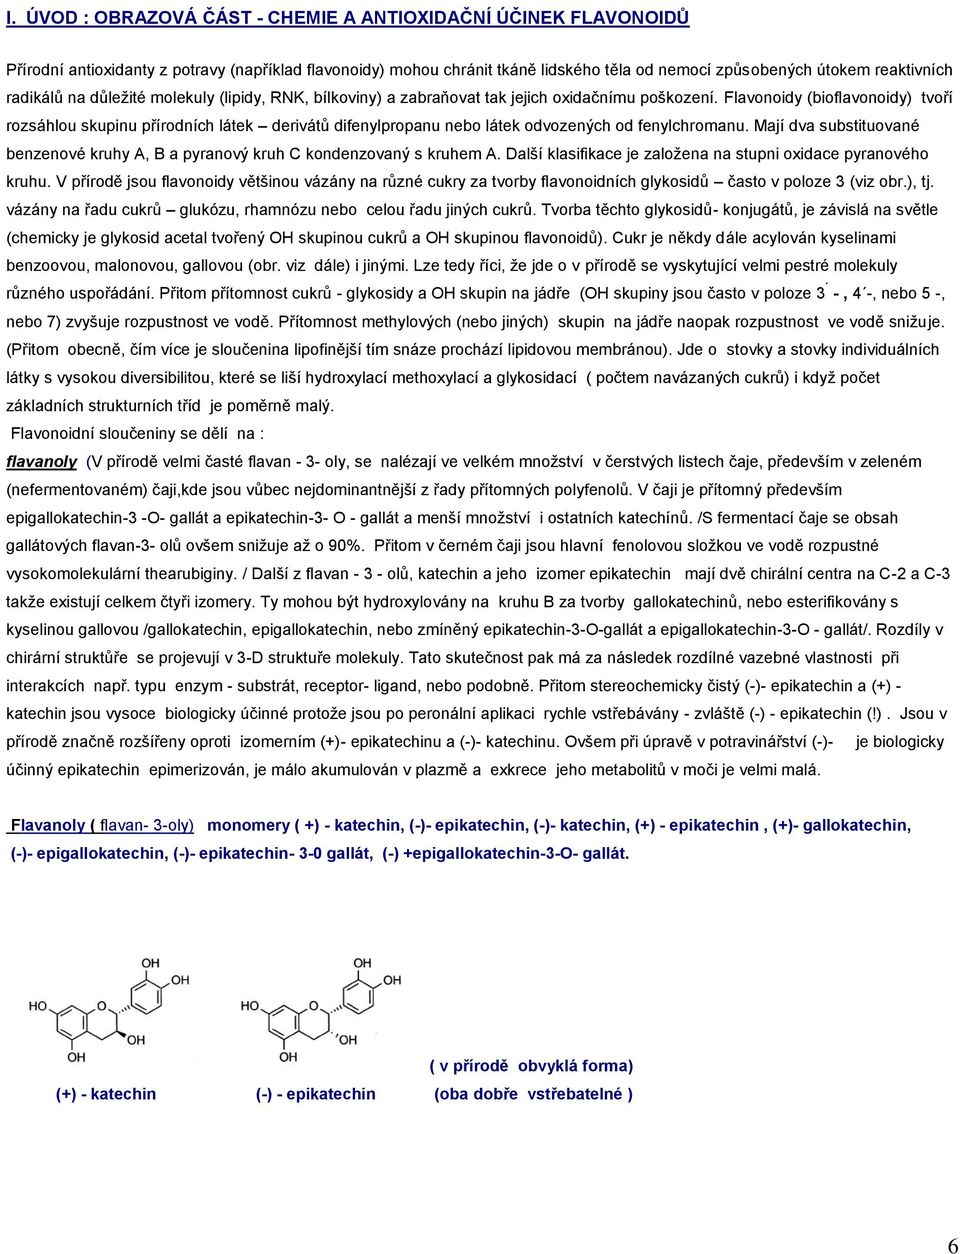 Flavonoidy (bioflavonoidy) tvoří rozsáhlou skupinu přírodních látek derivátů difenylpropanu nebo látek odvozených od fenylchromanu.